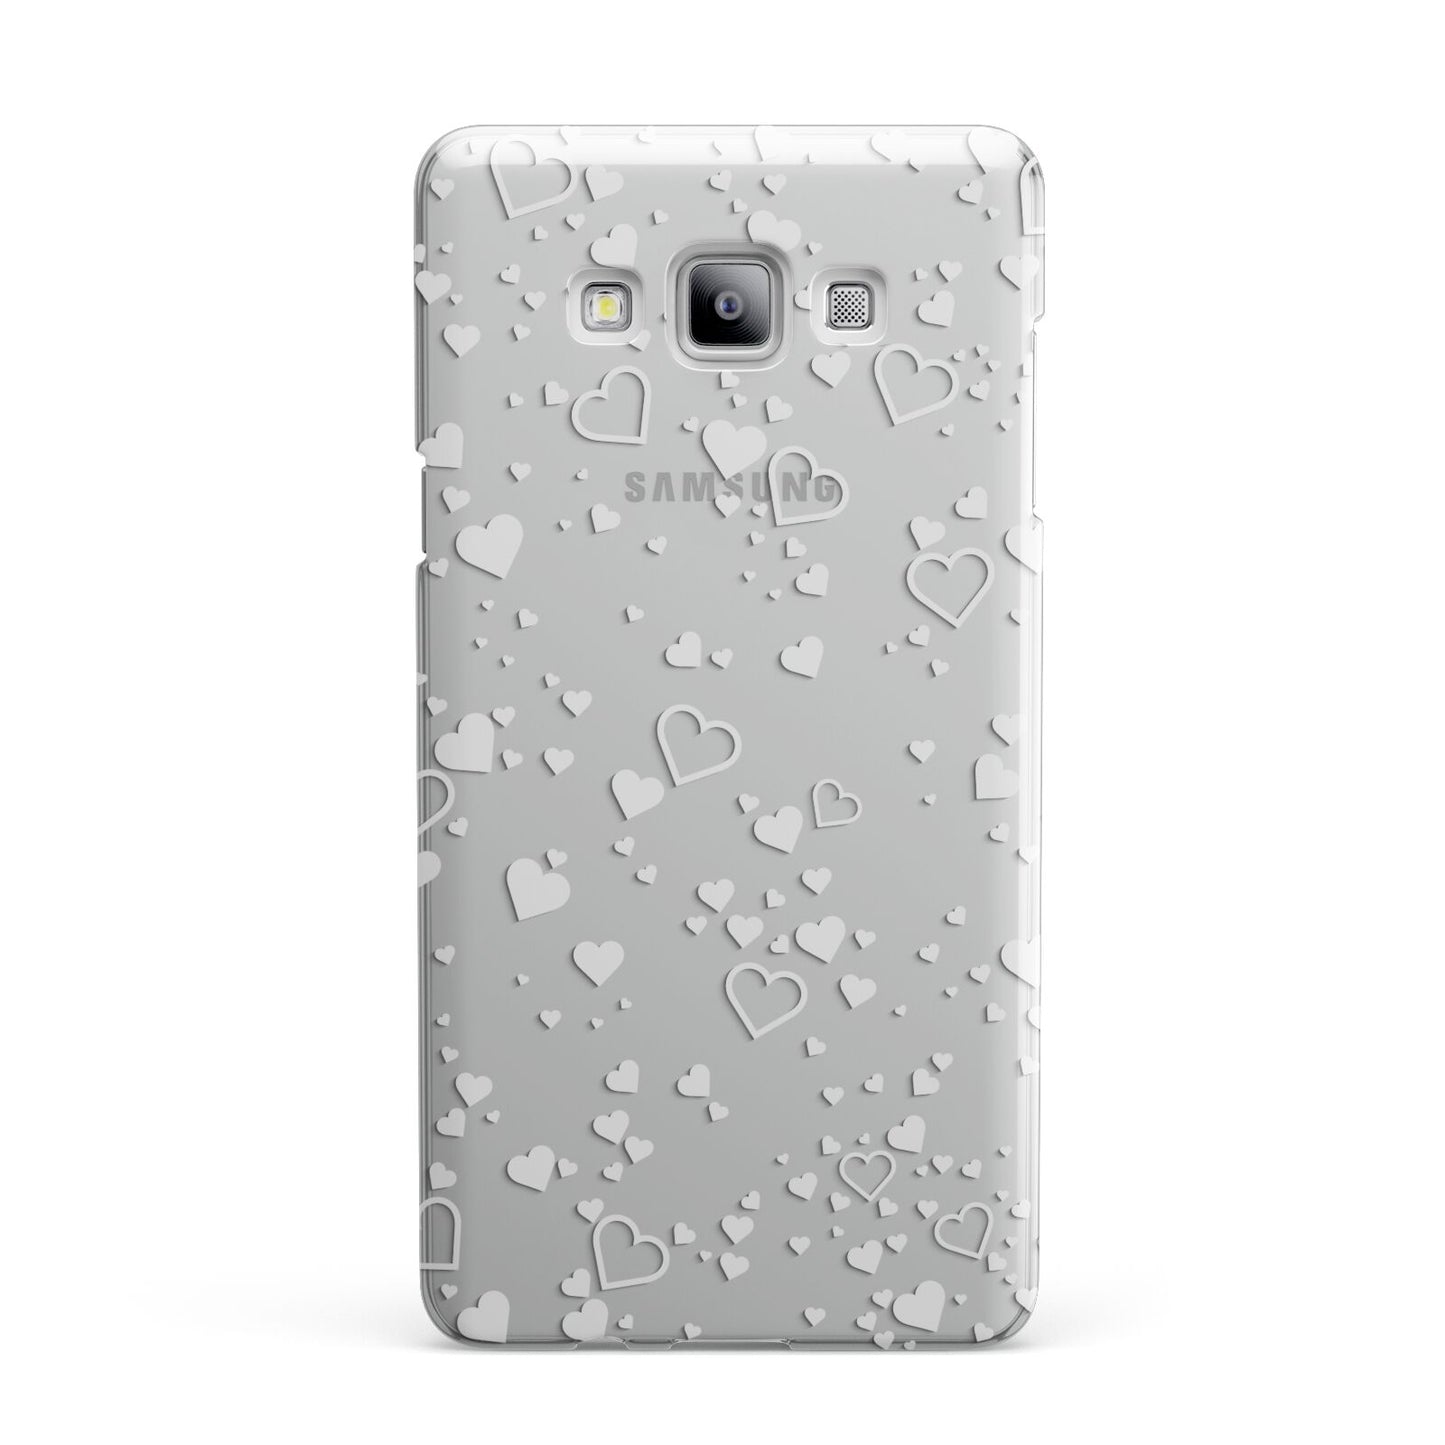 White Heart Samsung Galaxy A7 2015 Case